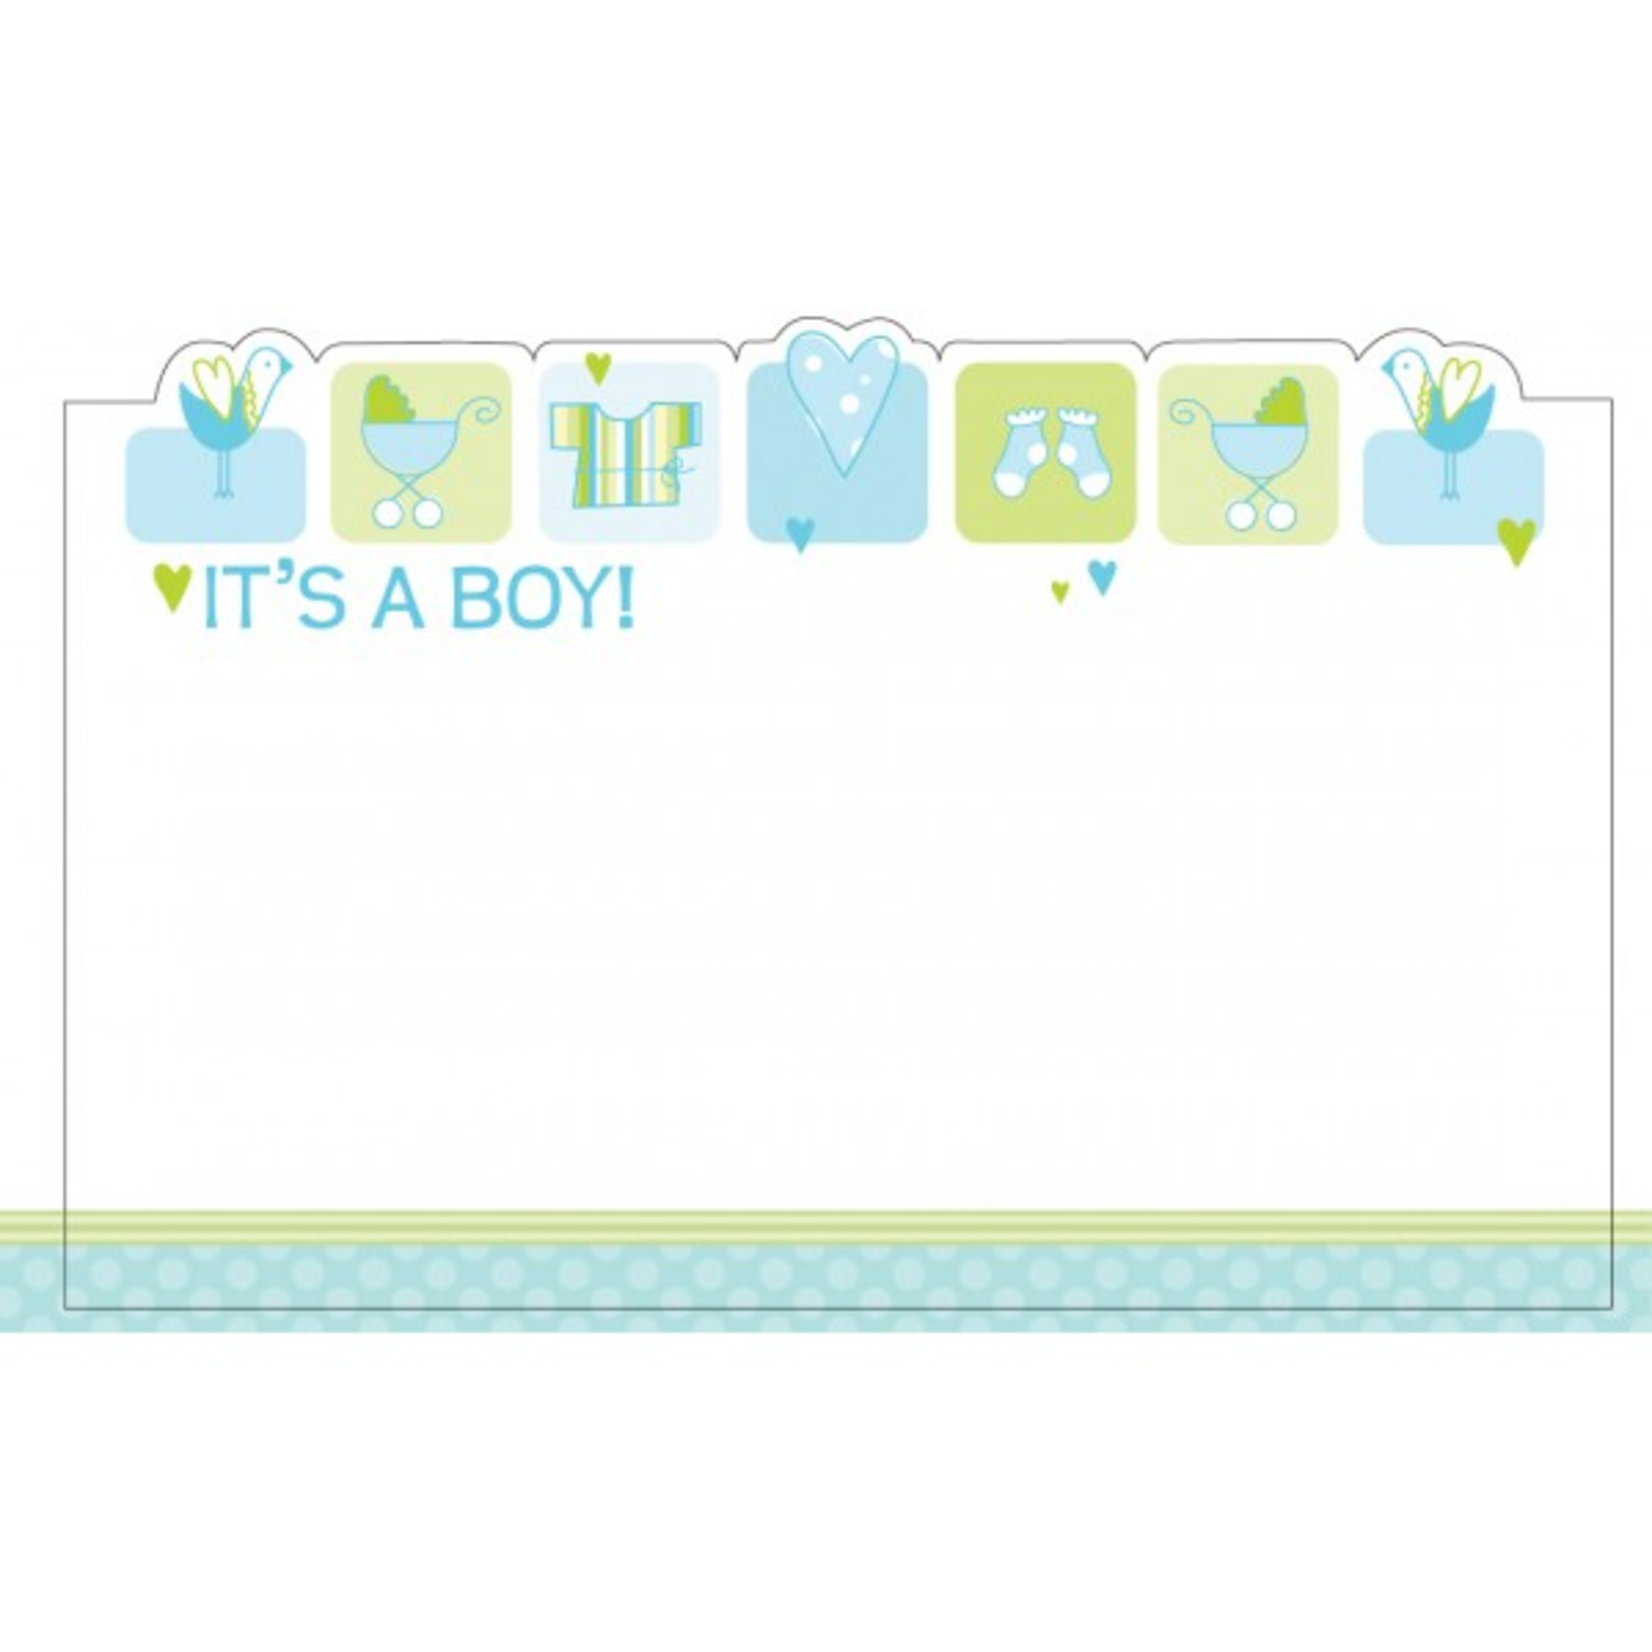 It's A Boy! - Pale Blue